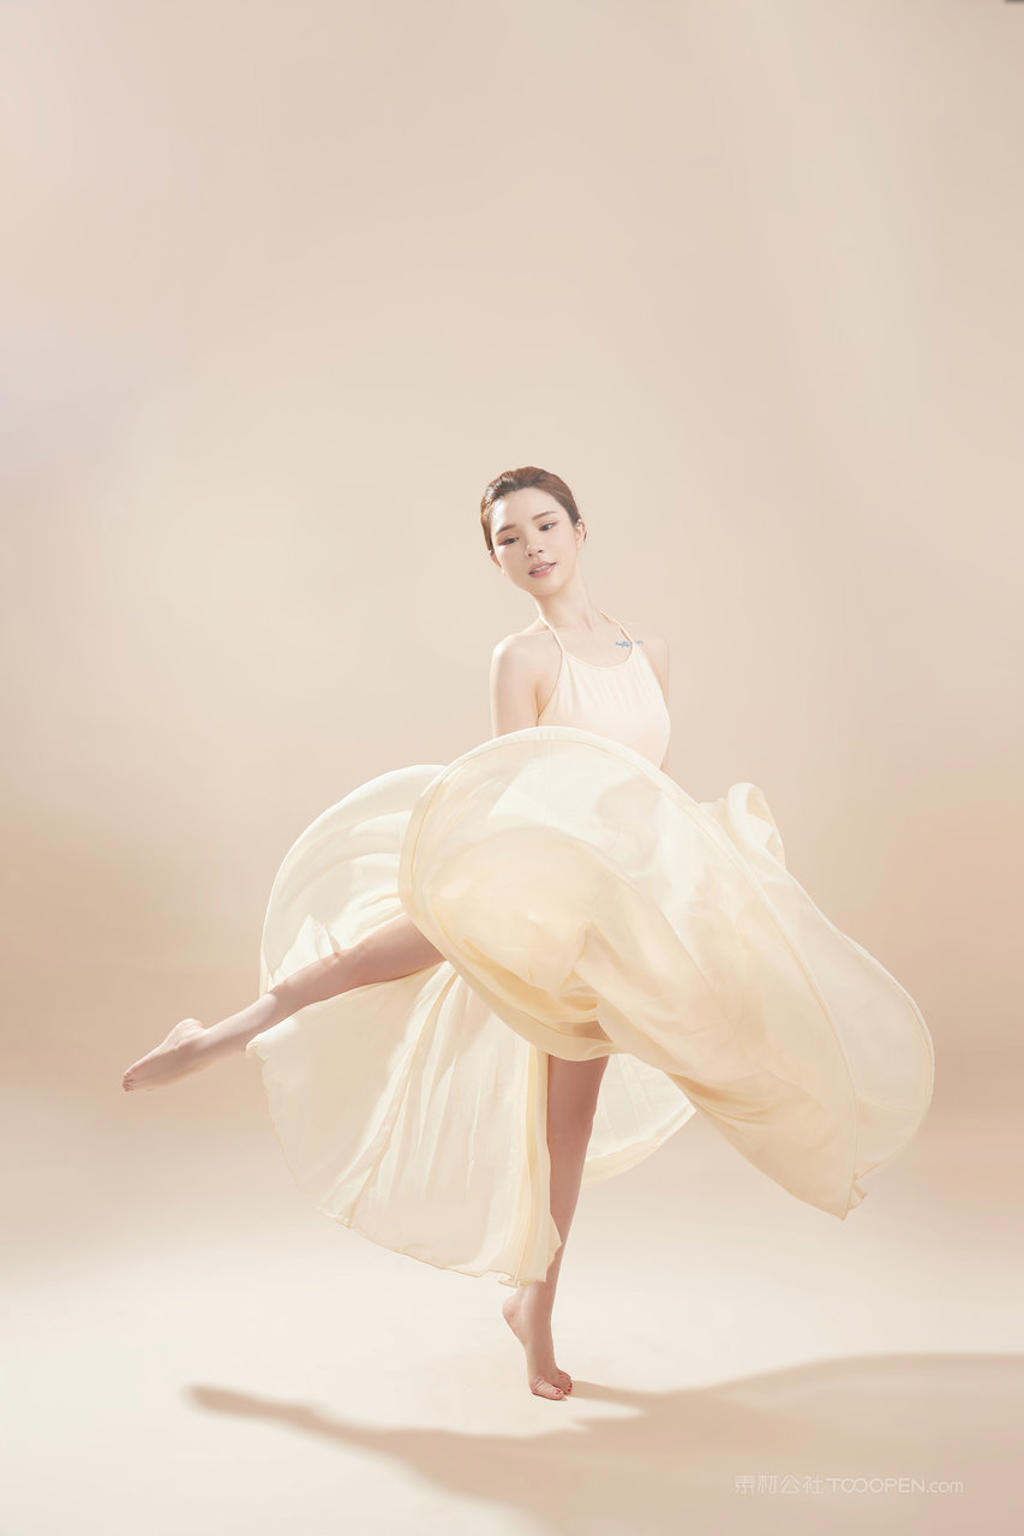 4K高清中国美女跳舞人体艺术写真图片